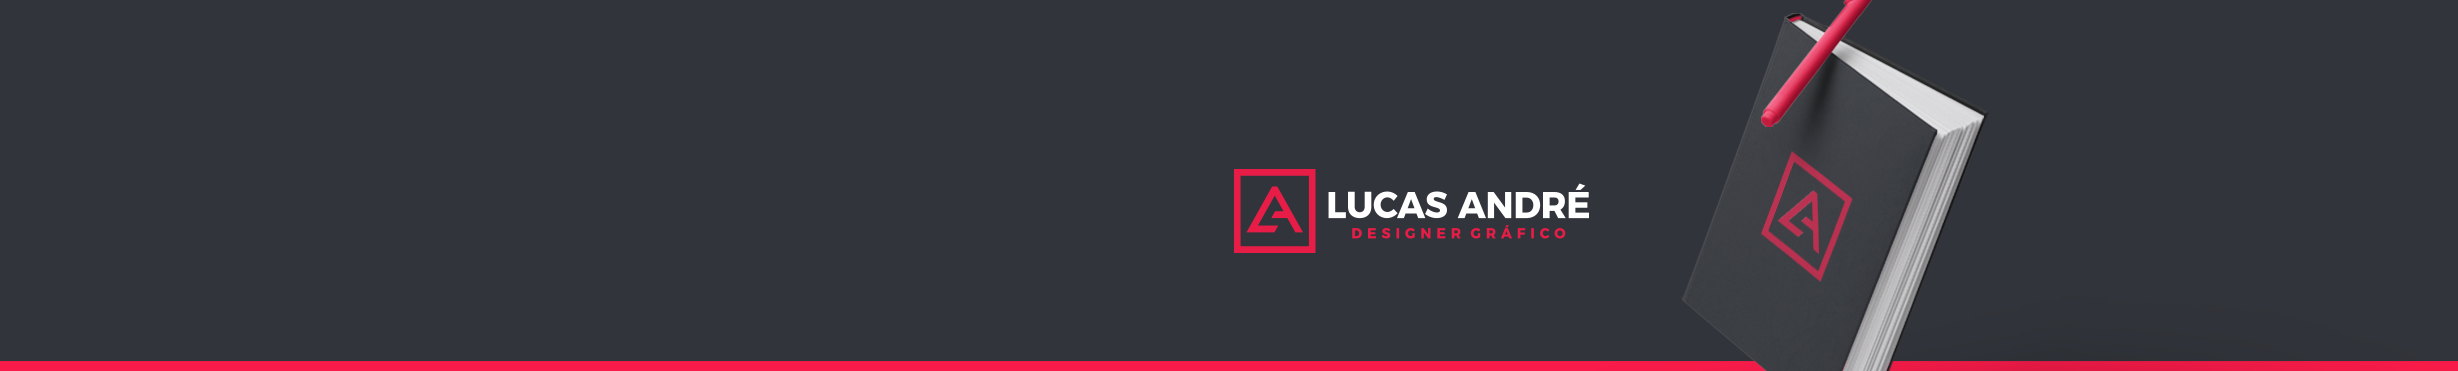 Lucas André's profile banner